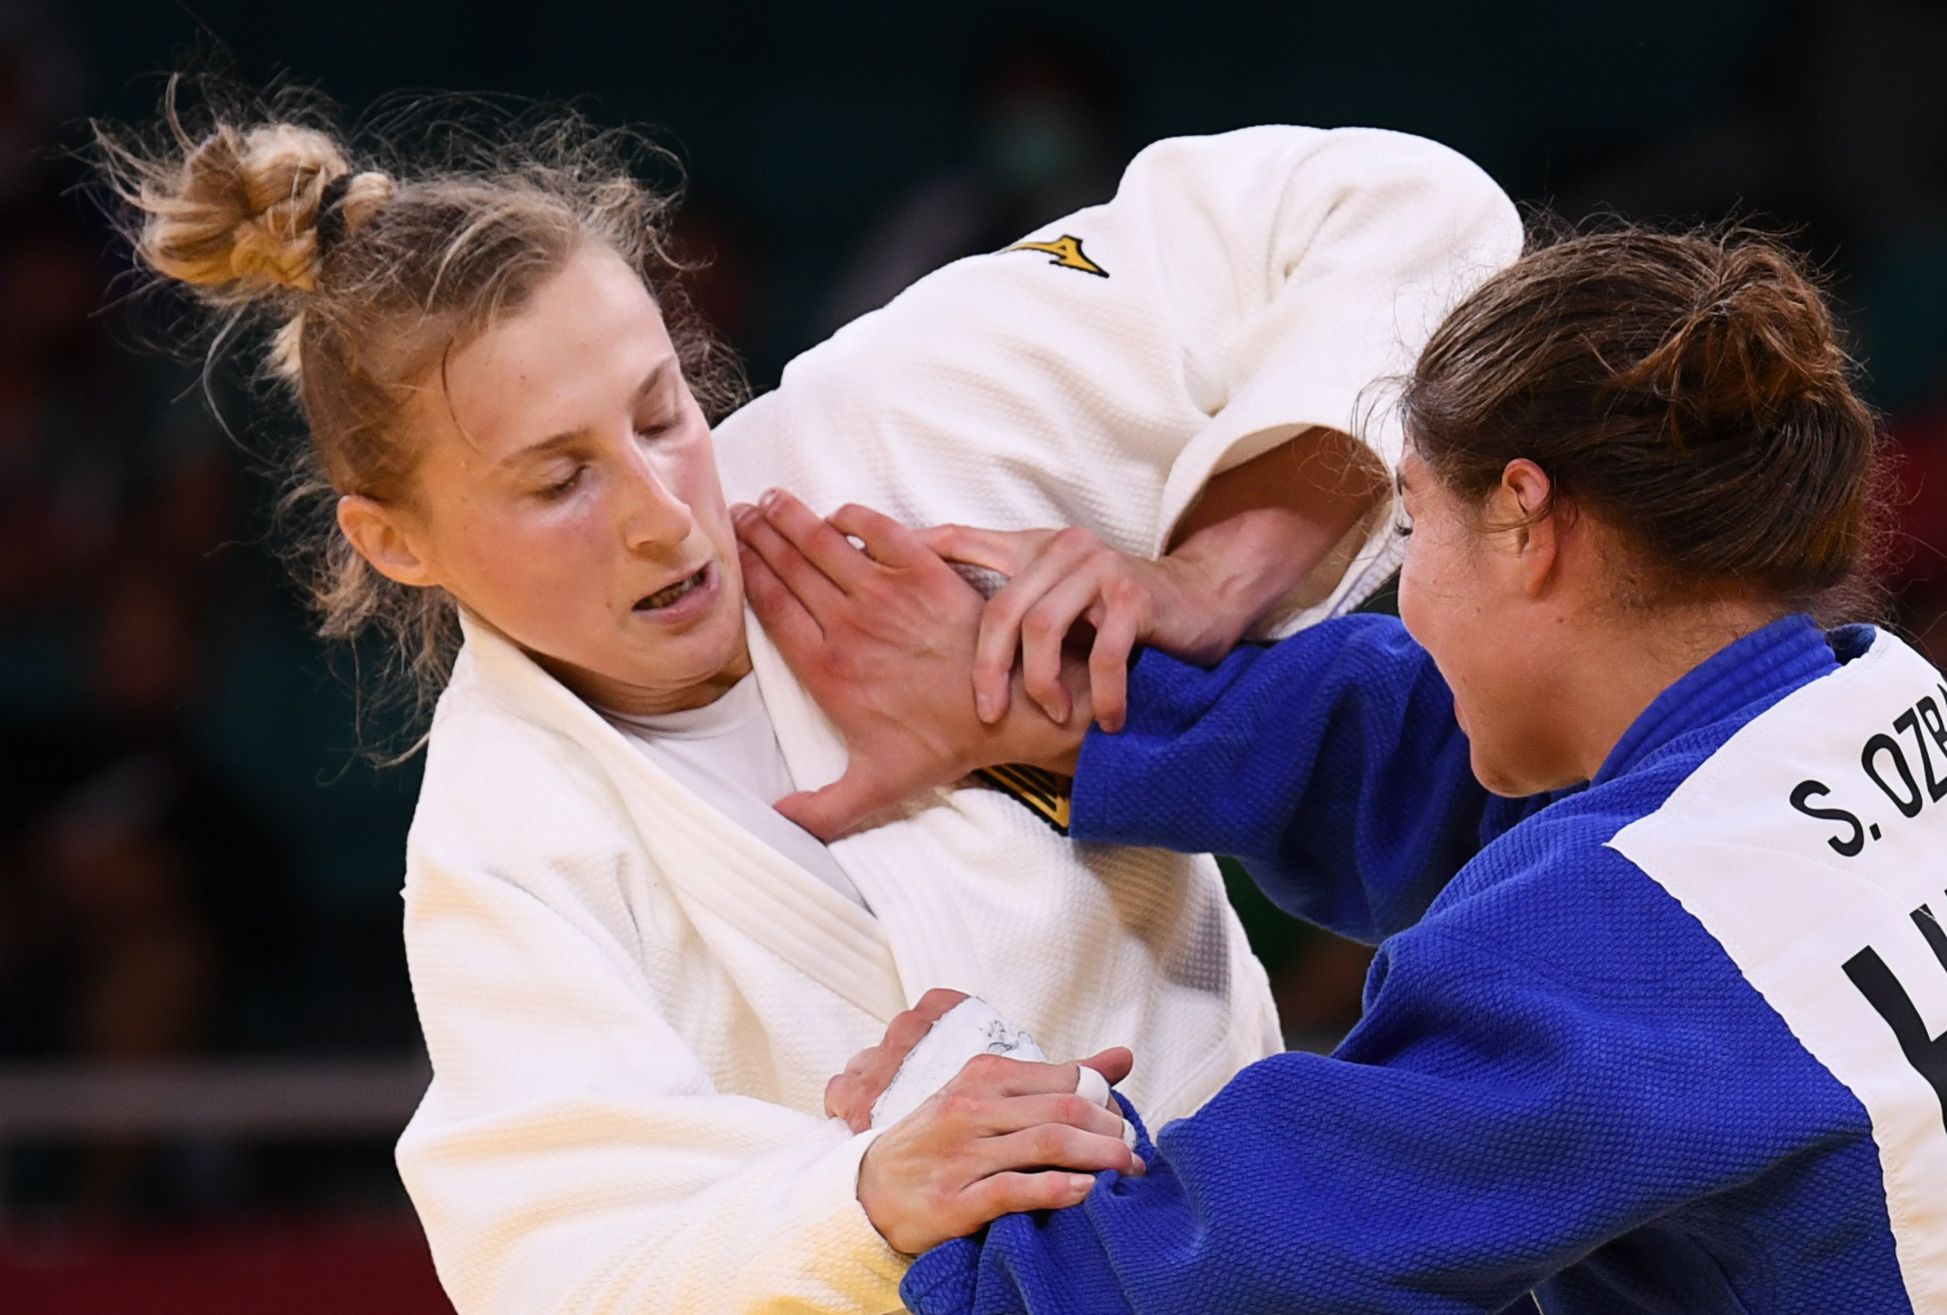 Das aggressive Ritual überraschte den Judo.  Die Ohrfeige war noch etwas heftig, der Konkurrent verteidigte den Trainer